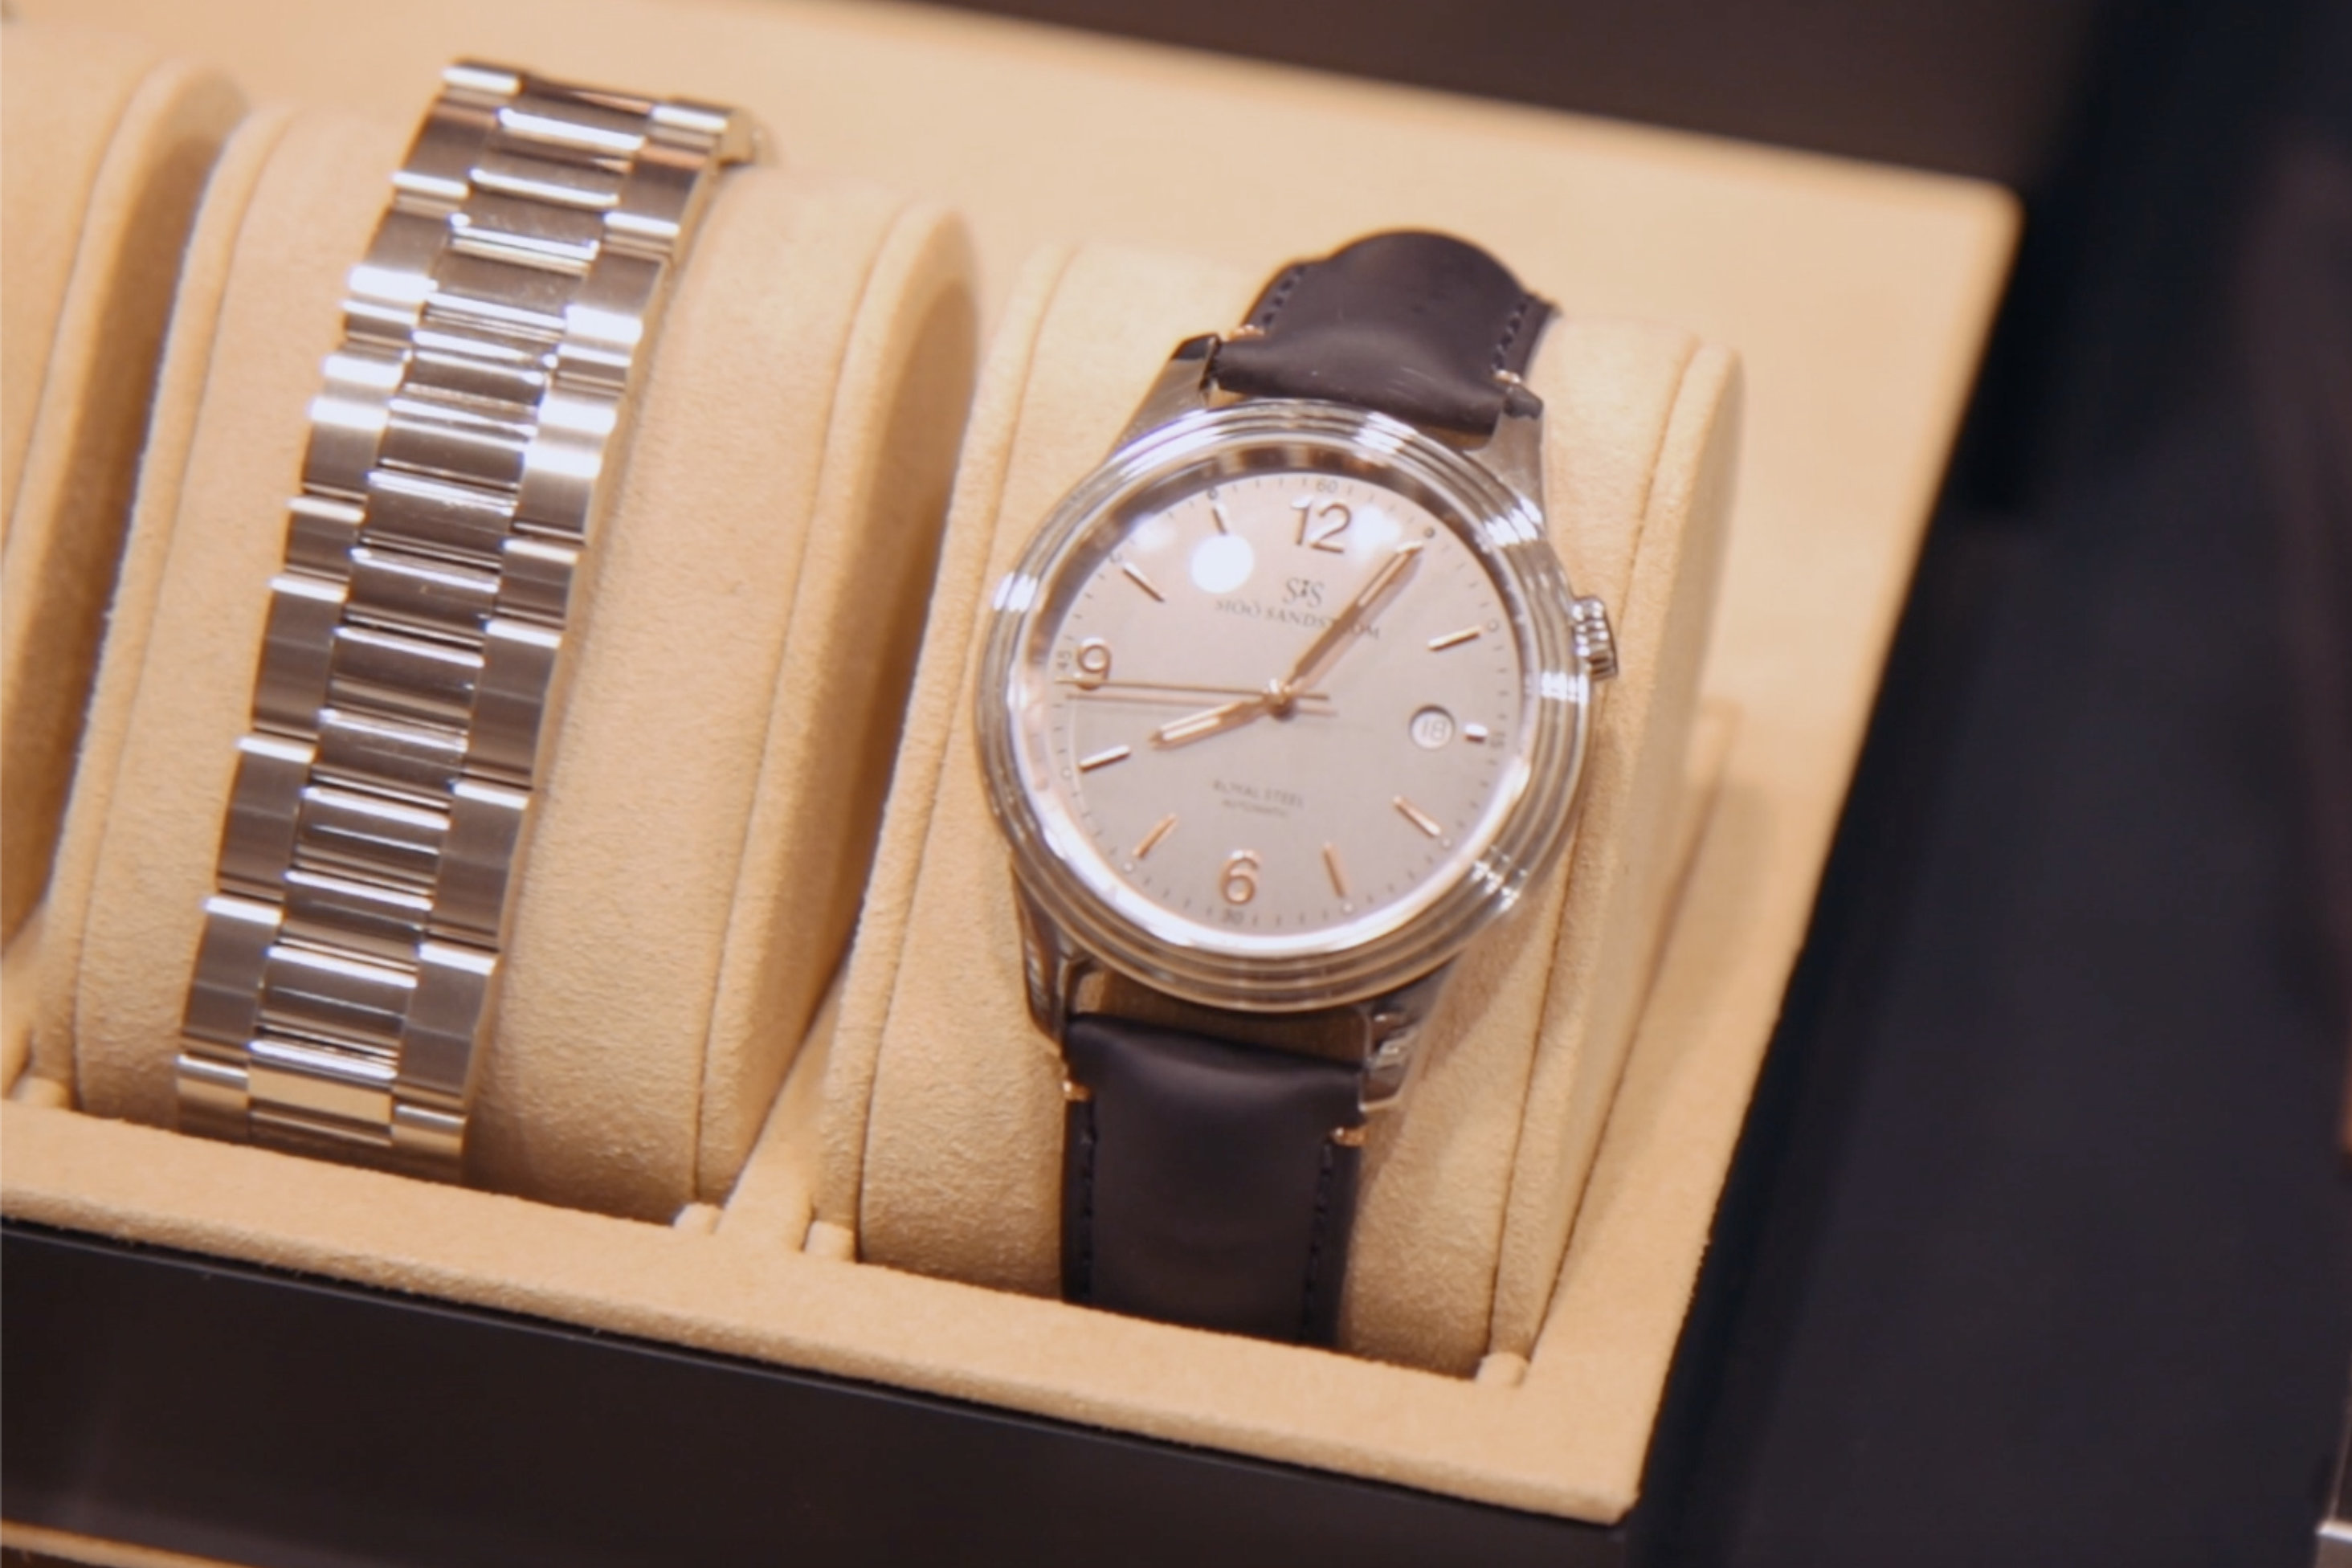 Reklamfilm för Stjärnurmakarna som säljer klockor och armbandsur i Landskrona